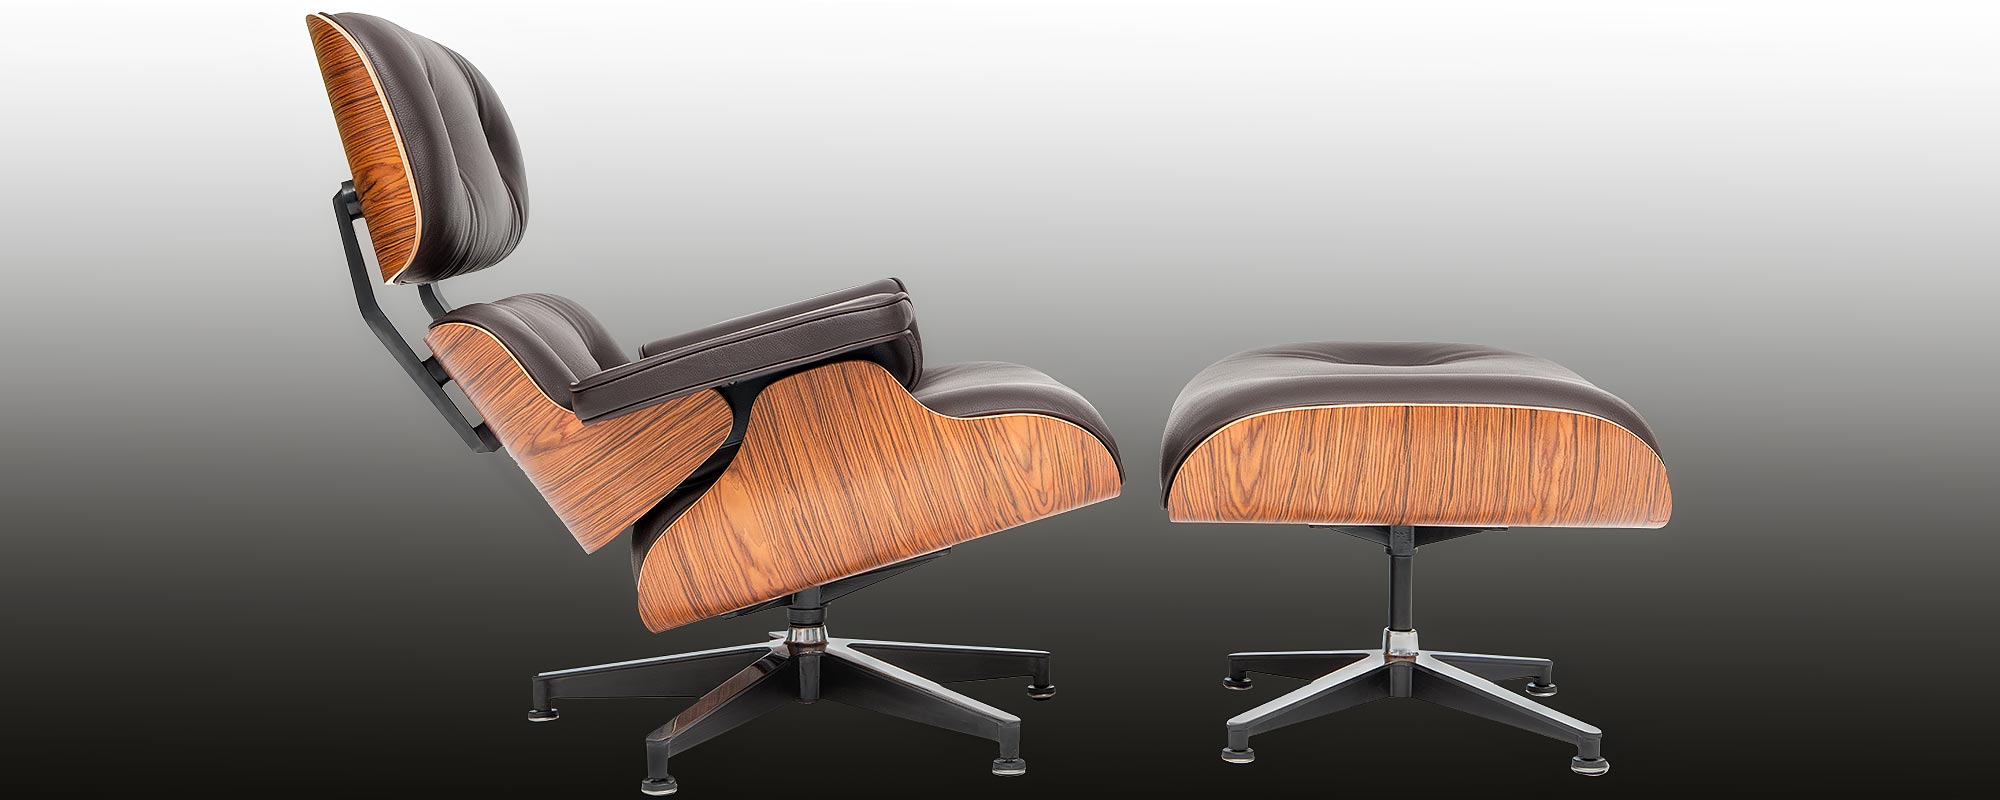 Der Eames Lounge | steelform ein Designklassiker Chair